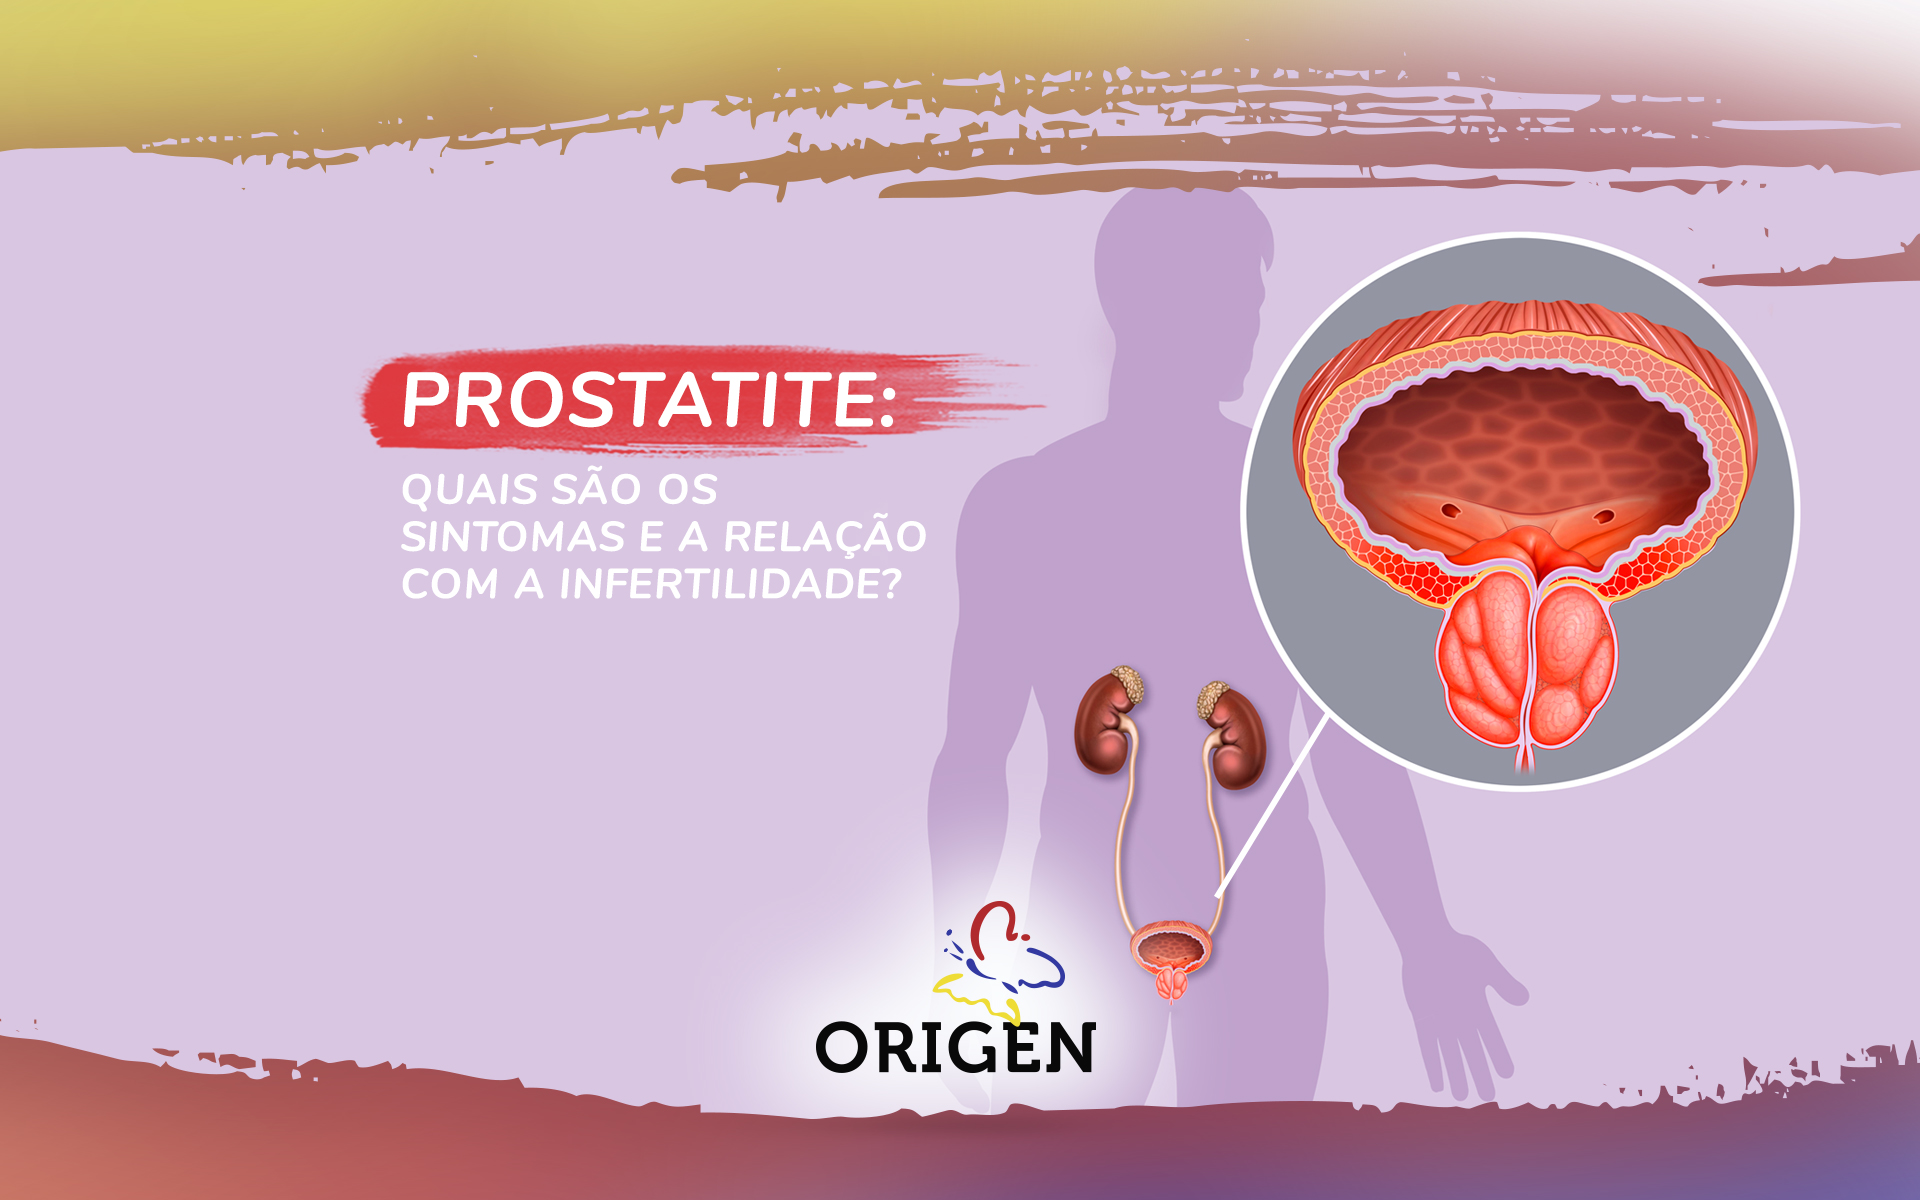 Prostatite: quais são os sintomas e a relação com a infertilidade?